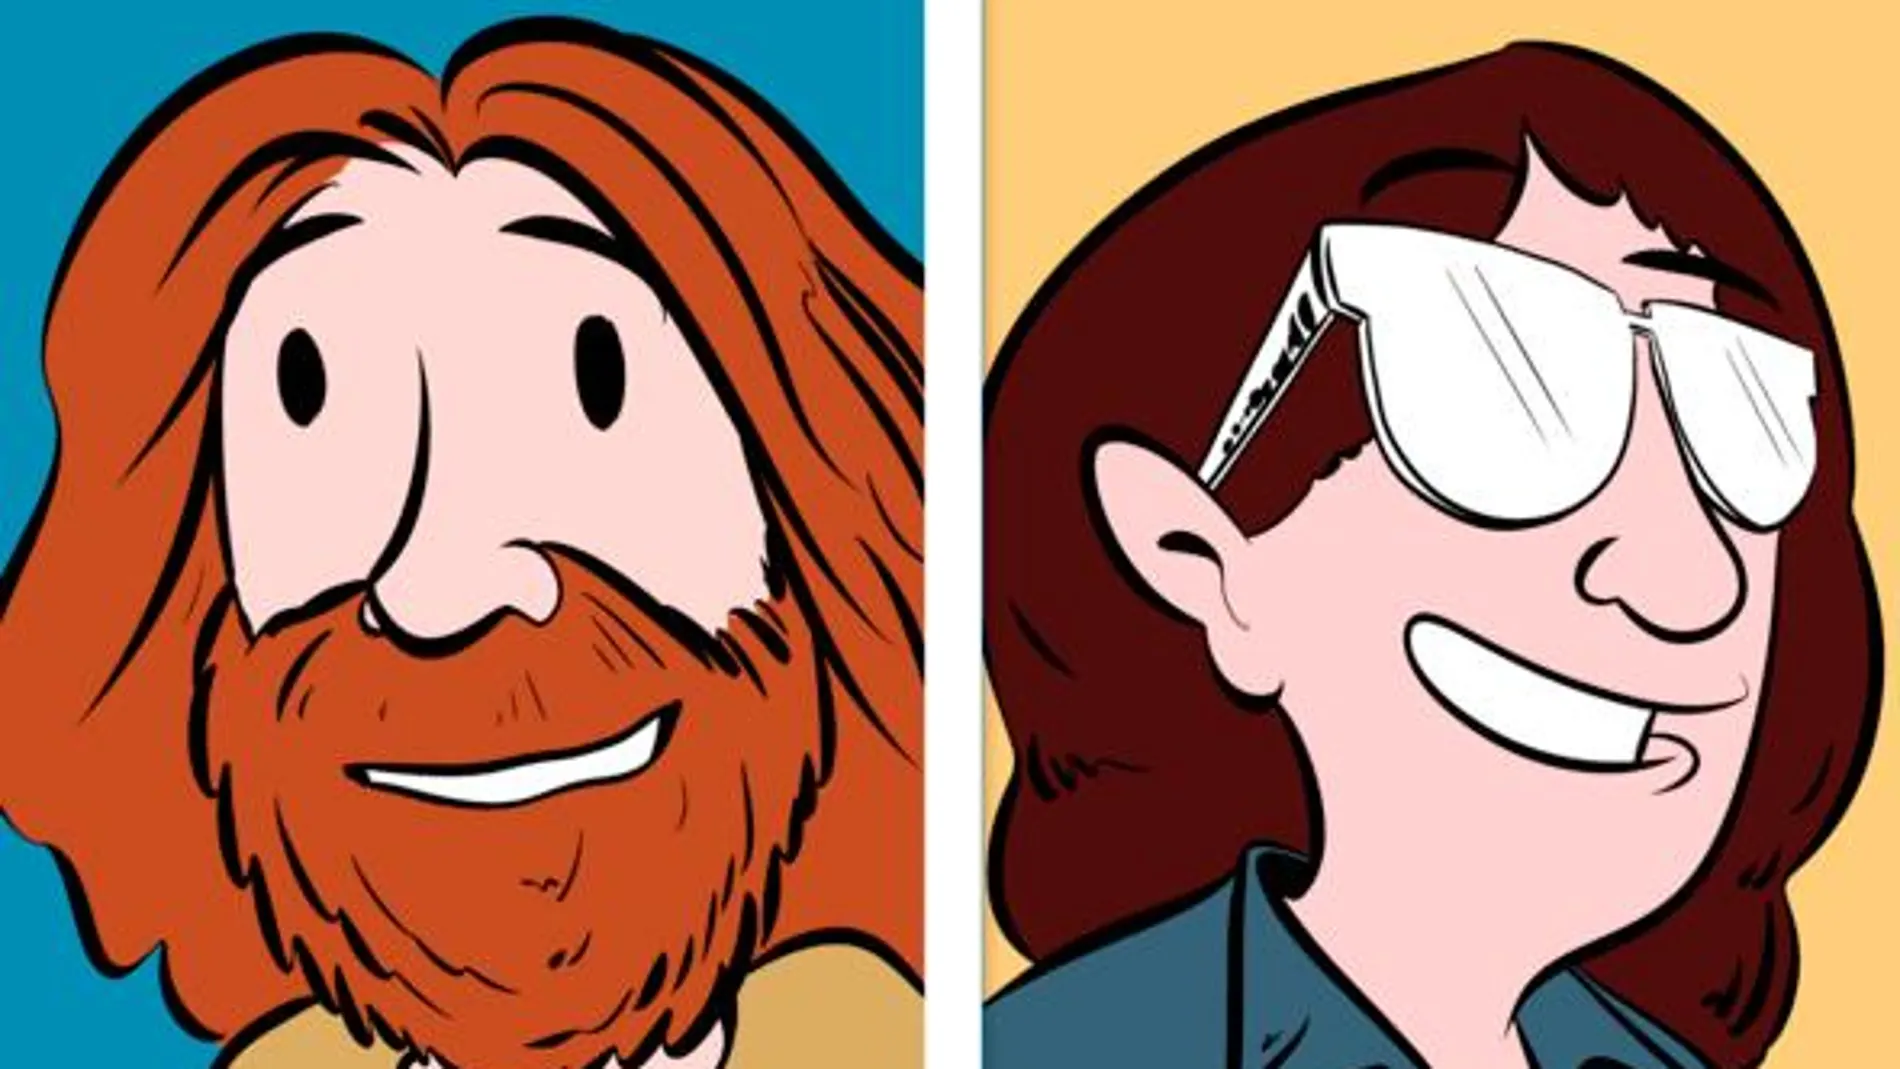 Caricaturas con las que les gusta retratarse a los autores Zach y Kelly Weinersmith. / Zach Weinersmith